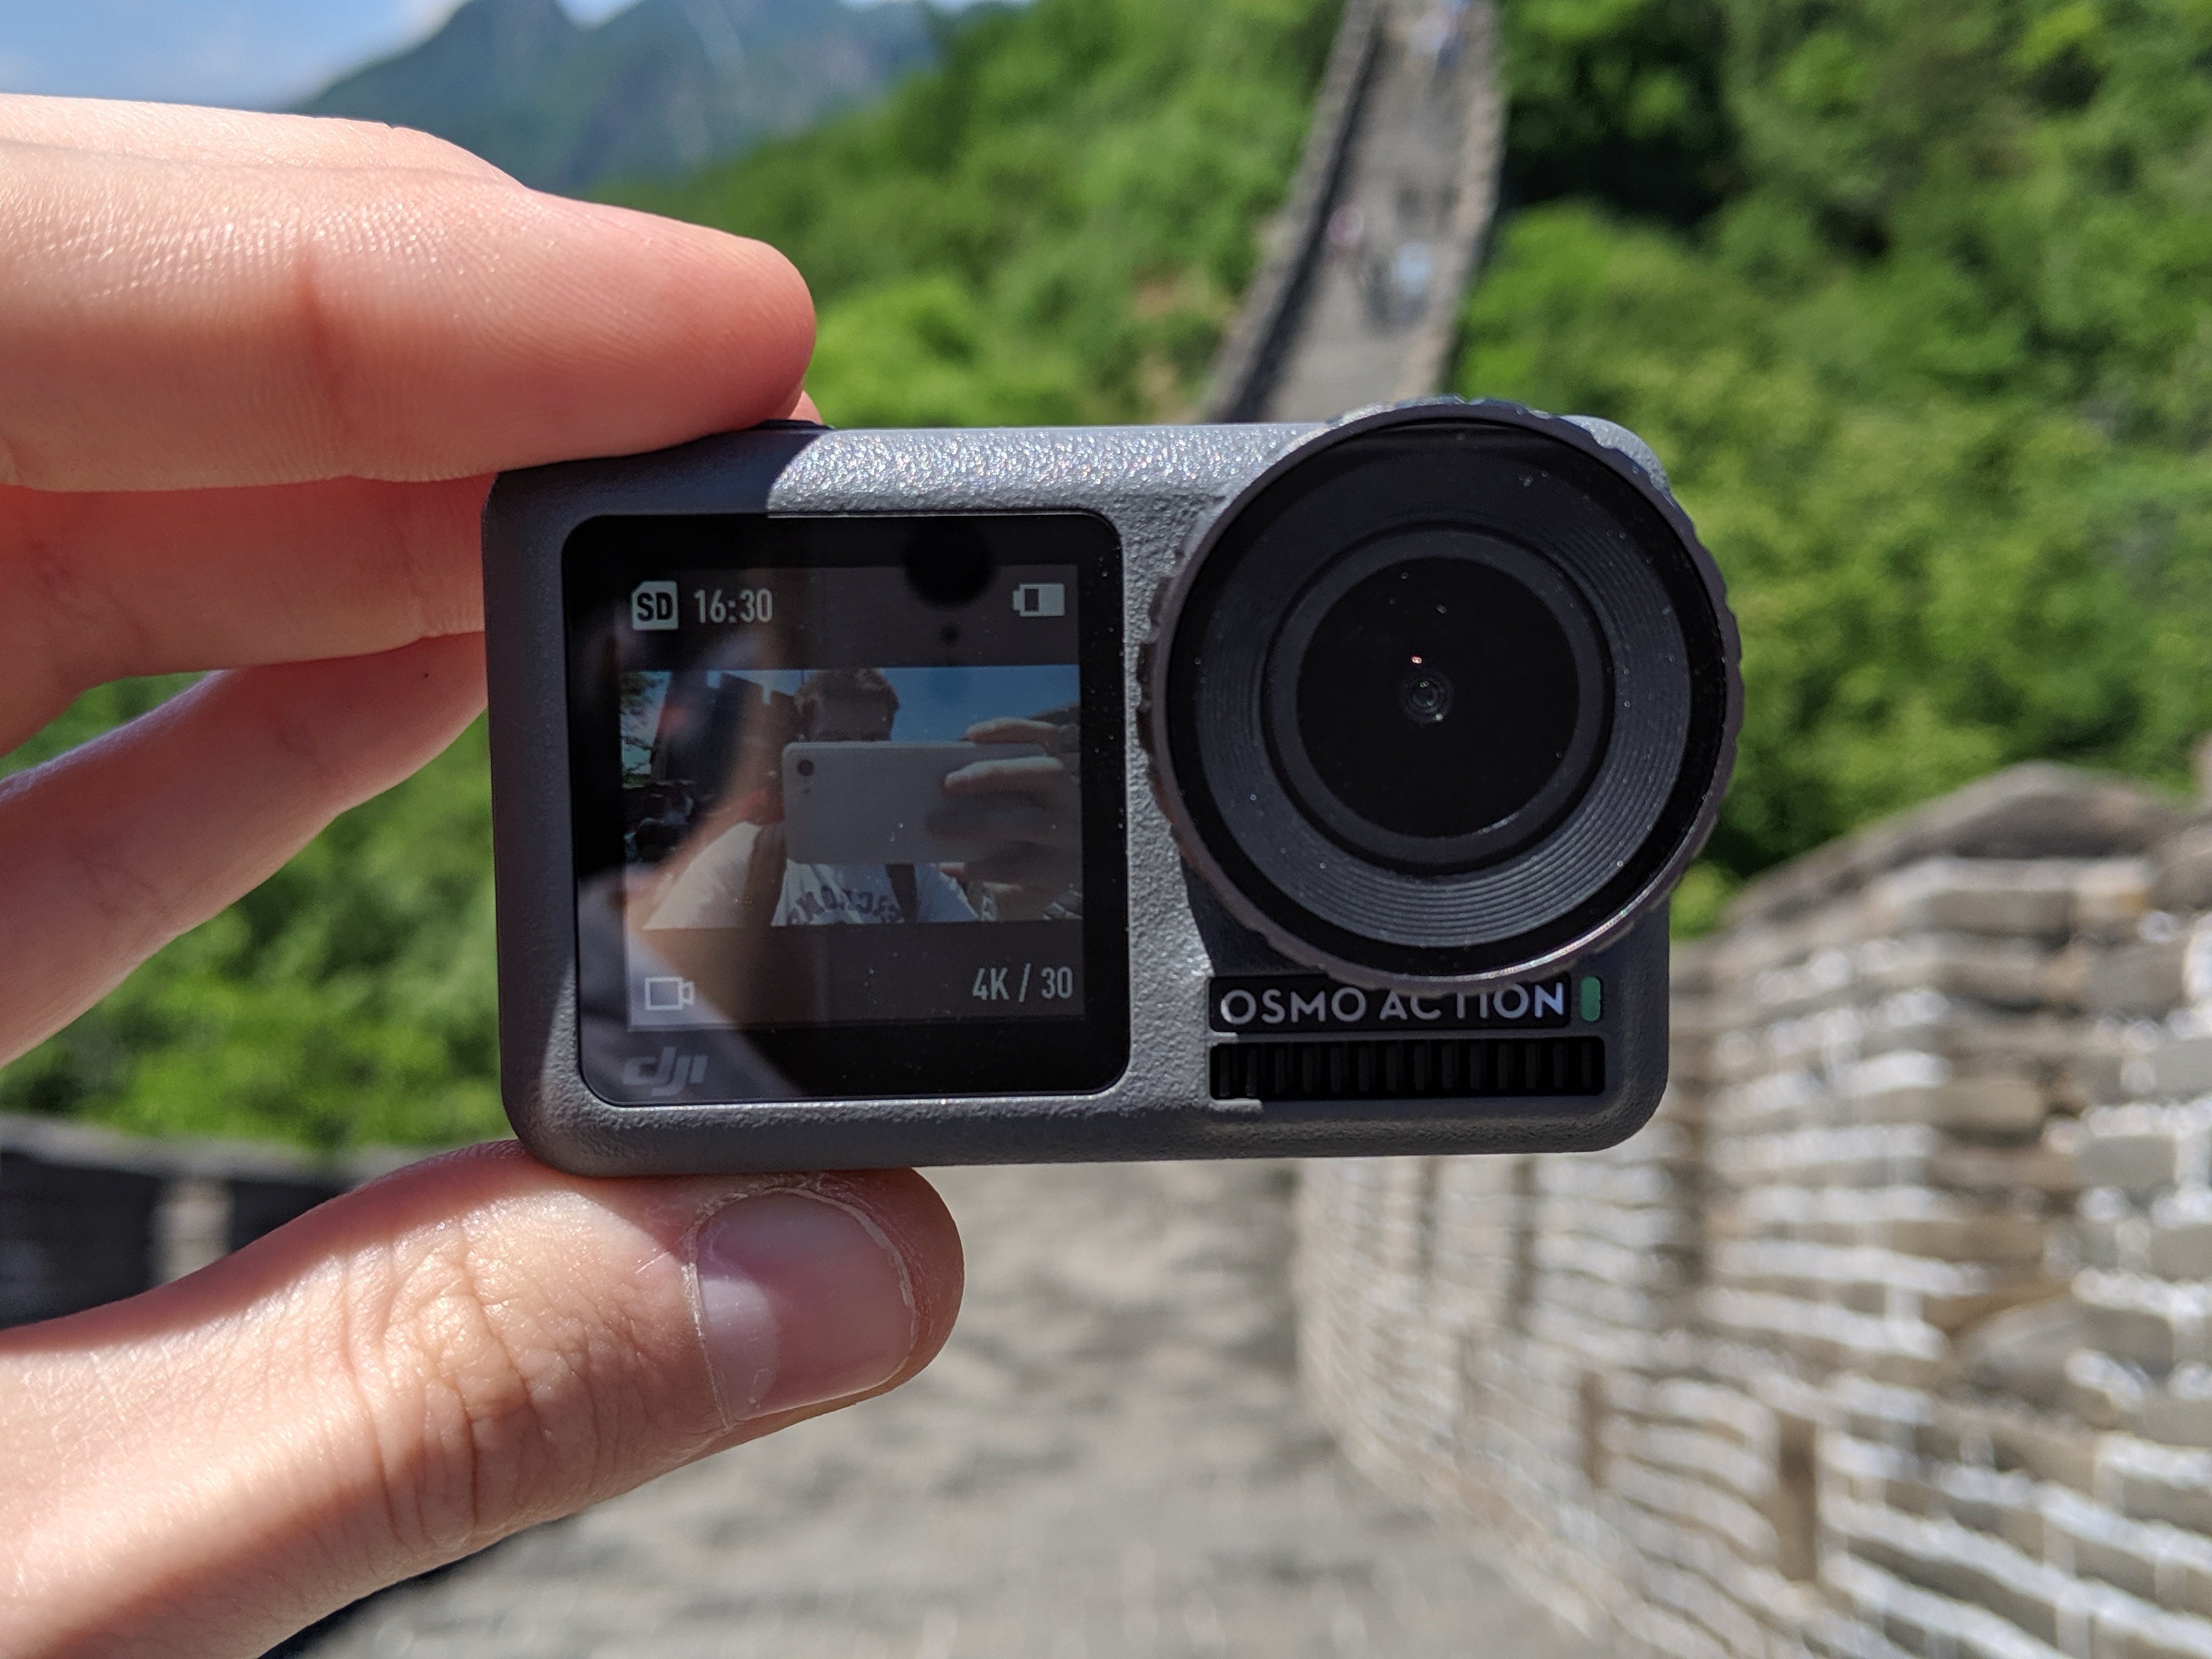 Etanche, 4K ou capable de filmer à 360° : quelle action-cam choisir ?